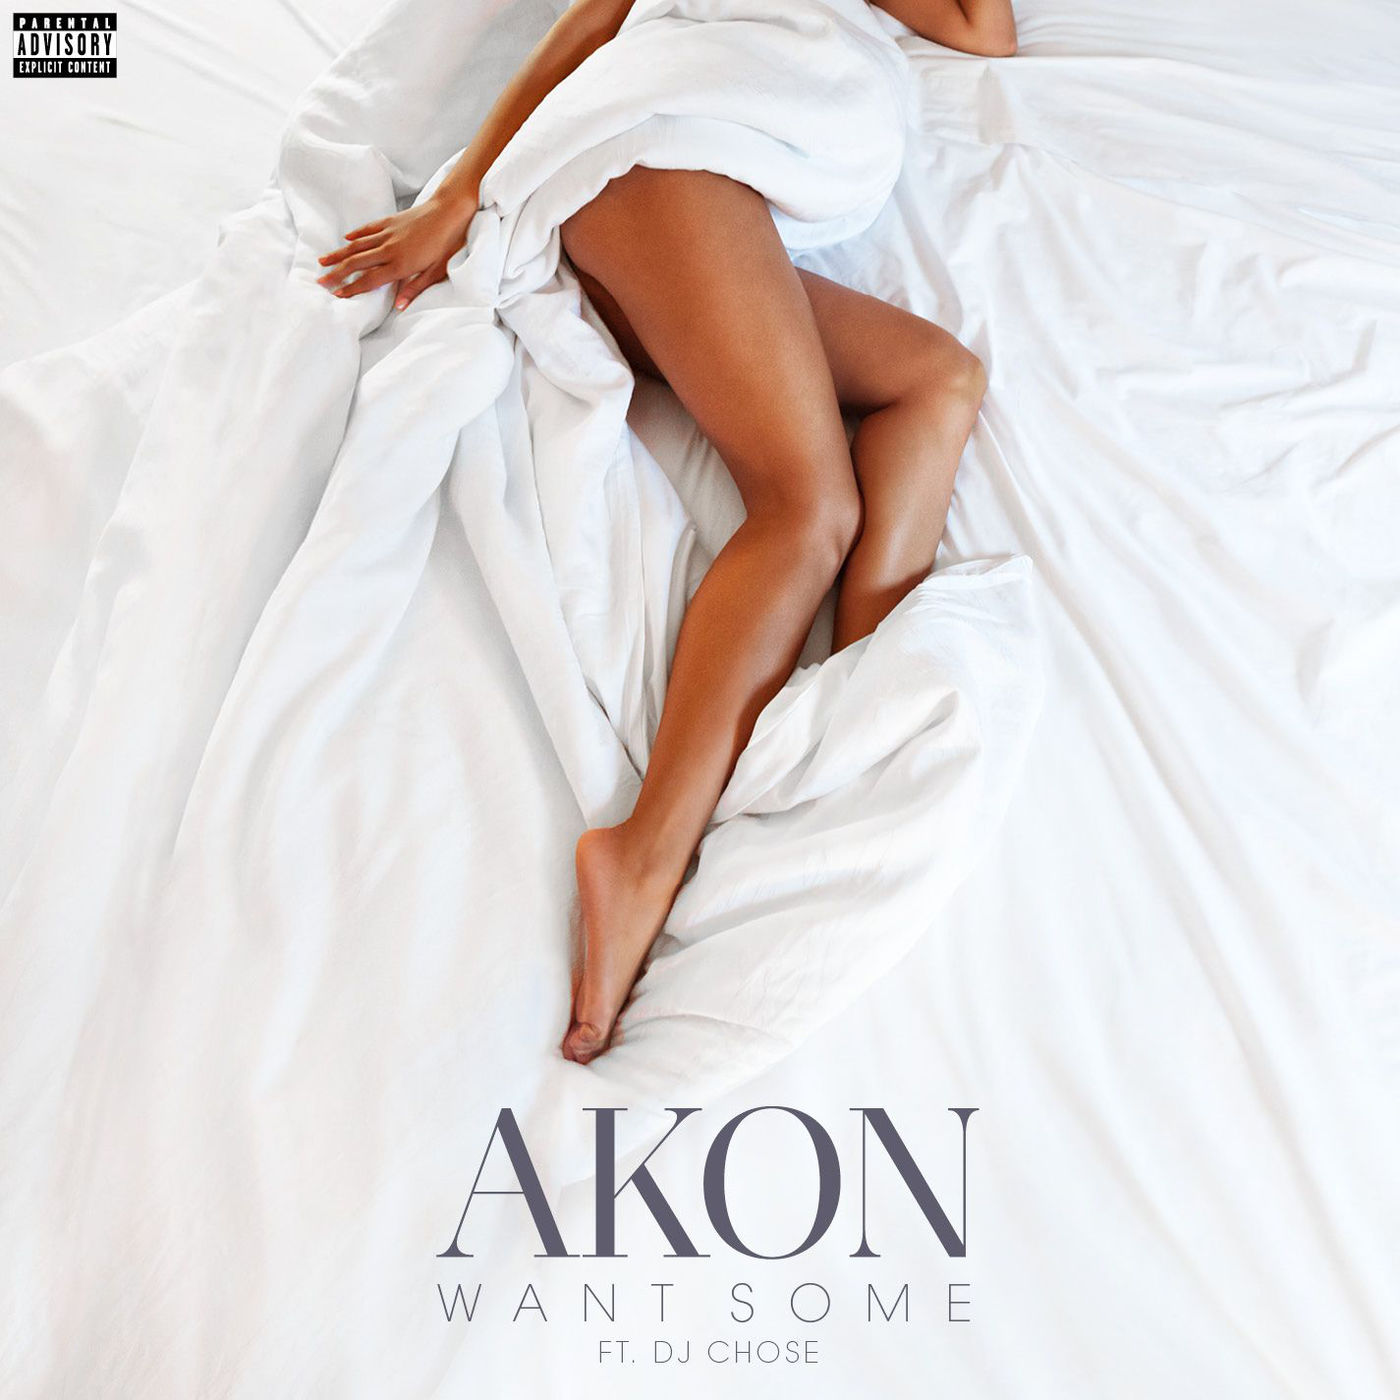 Right  Now  Blues  Remix  Ver. Akon  Kat DeLuna remix